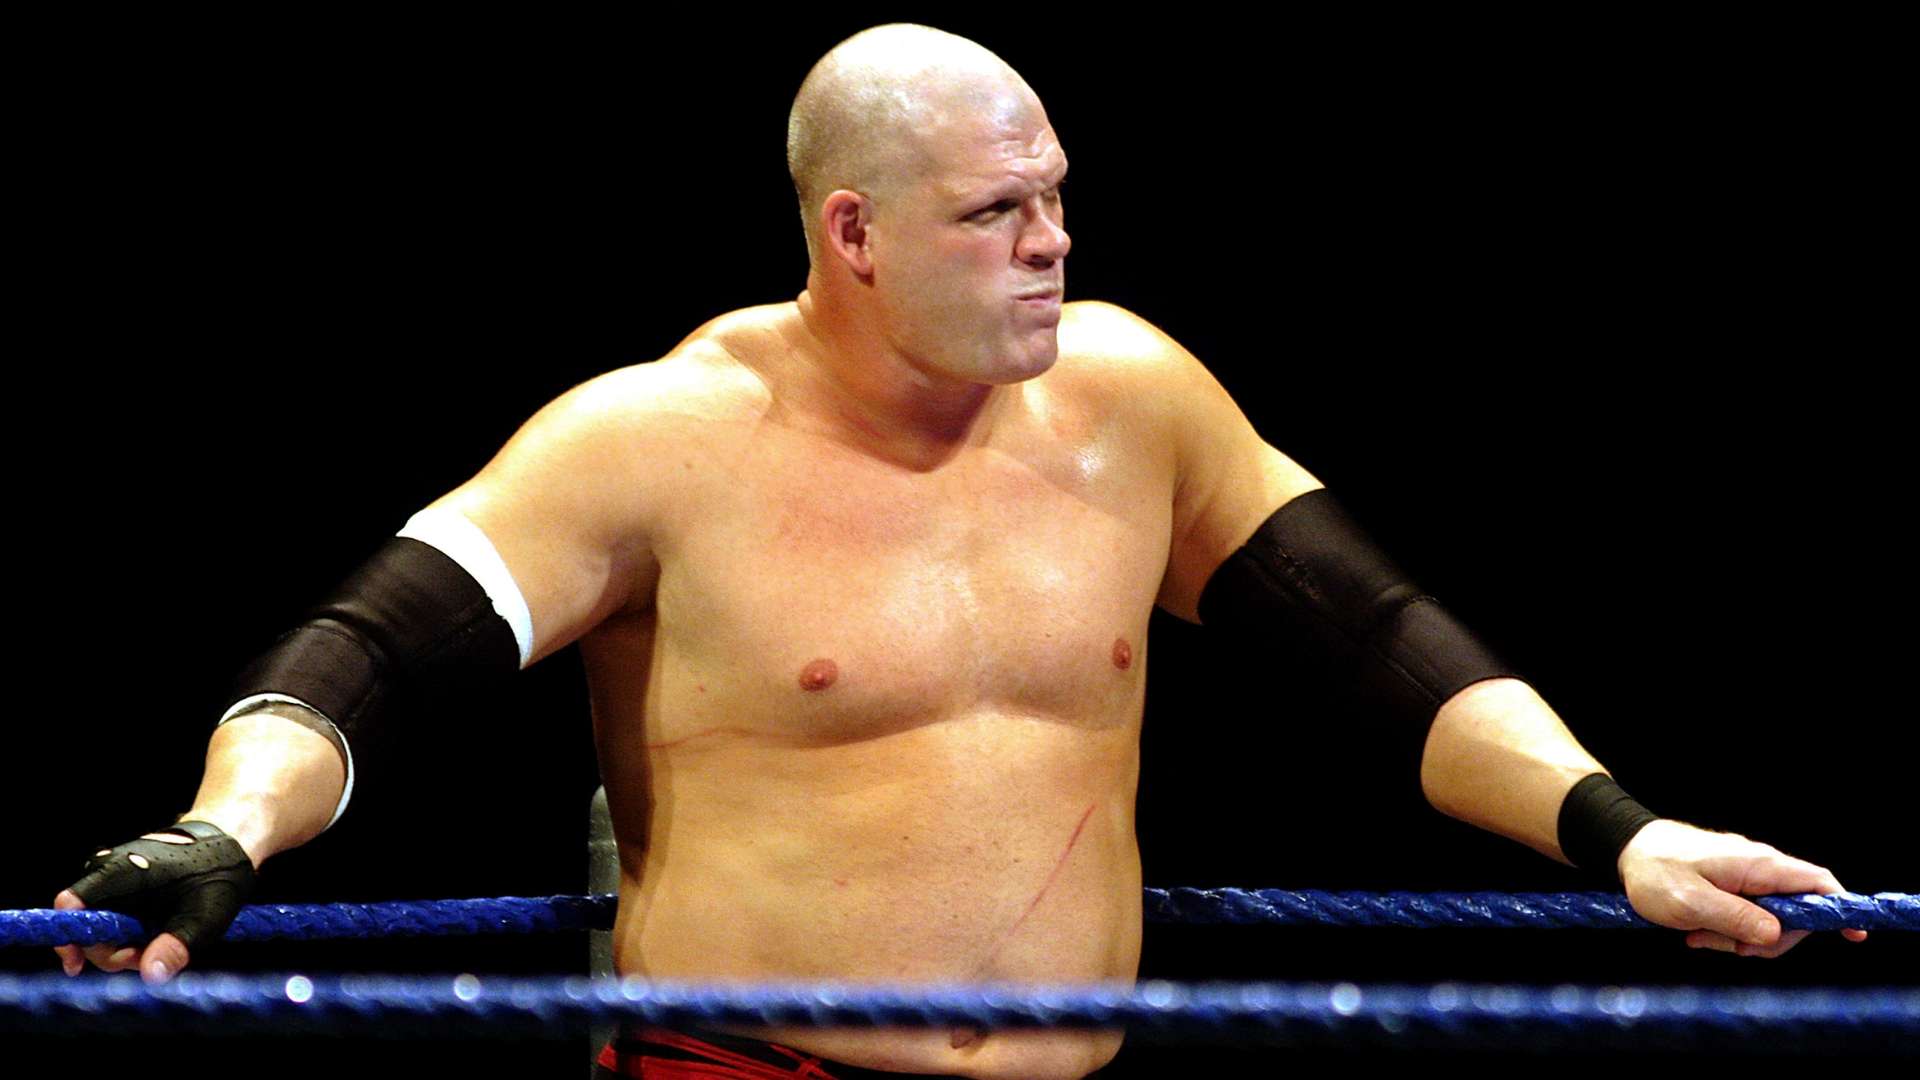 Kane WWE Smackdown 2009